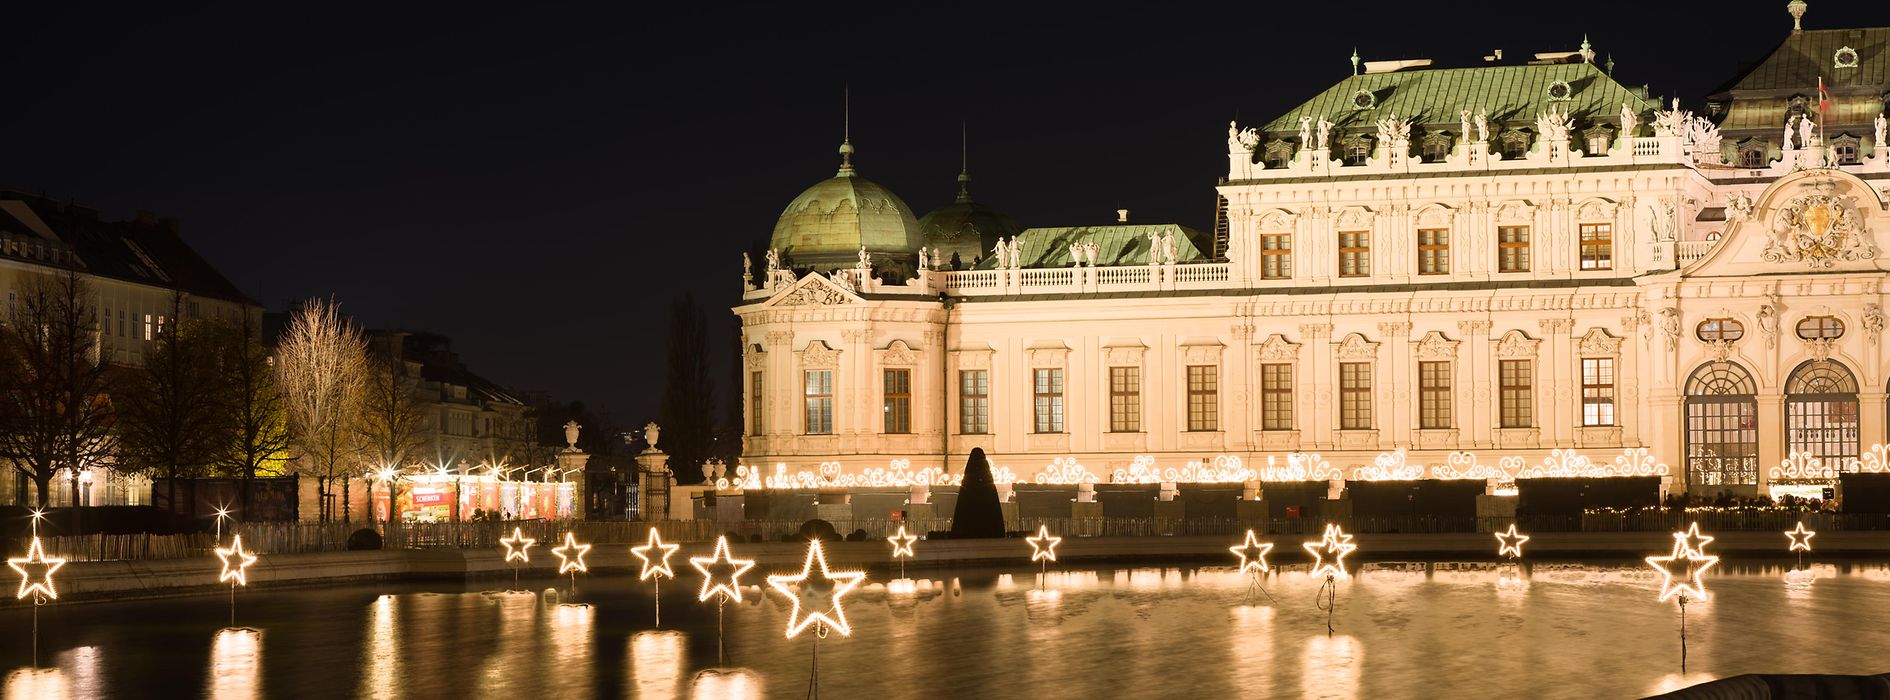 クリスマスらしくライトアップされたベルヴェデーレ宮殿